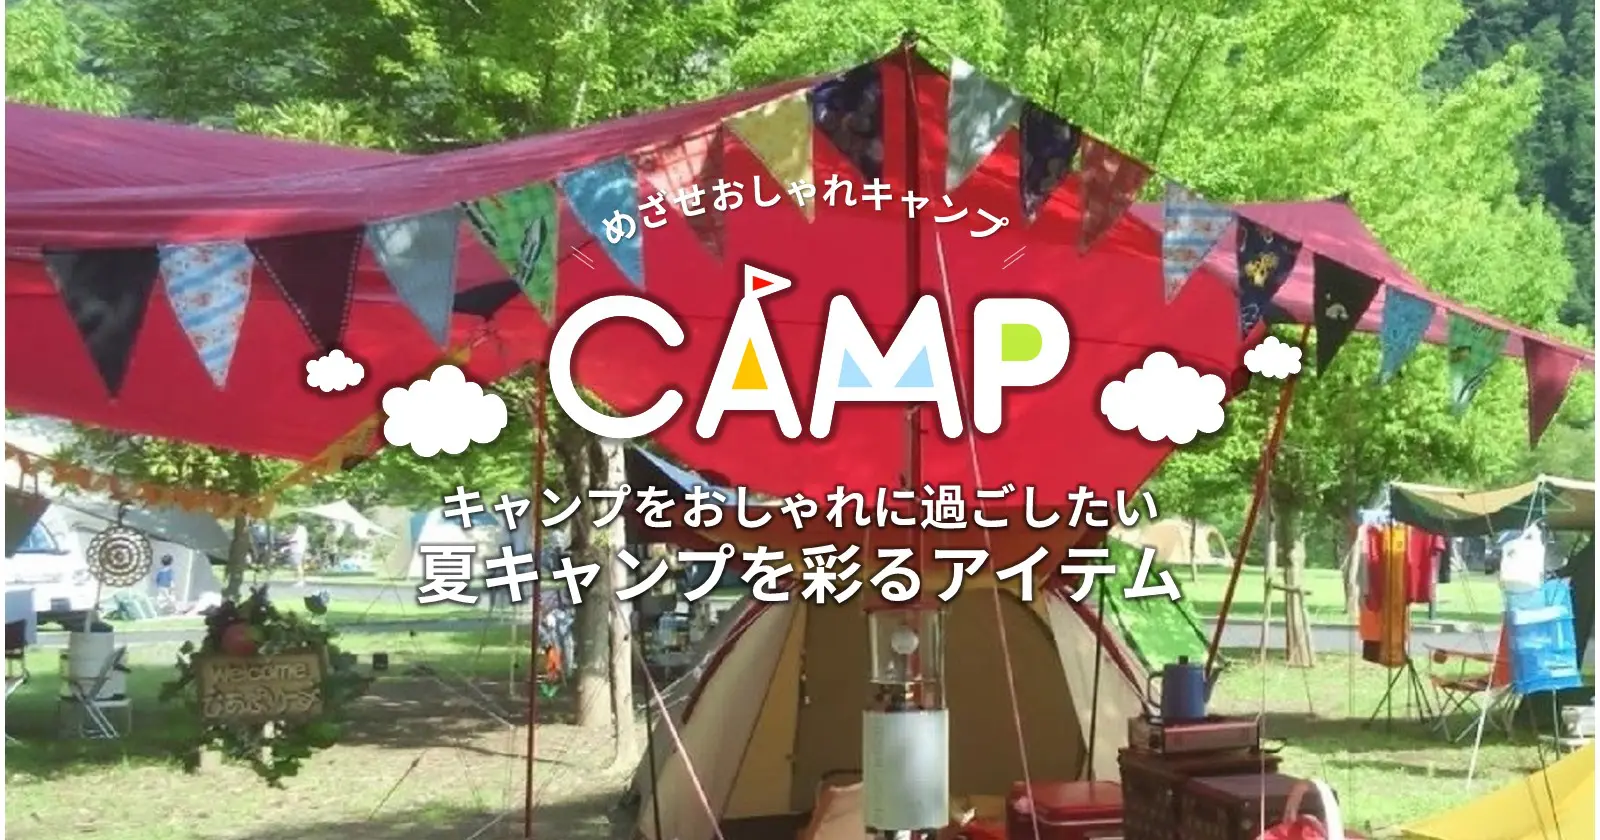 キャンプをおしゃれに過ごしたい 夏キャンプを彩るアイテムをご紹介 キャンプ アウトドアのtakibi タキビ